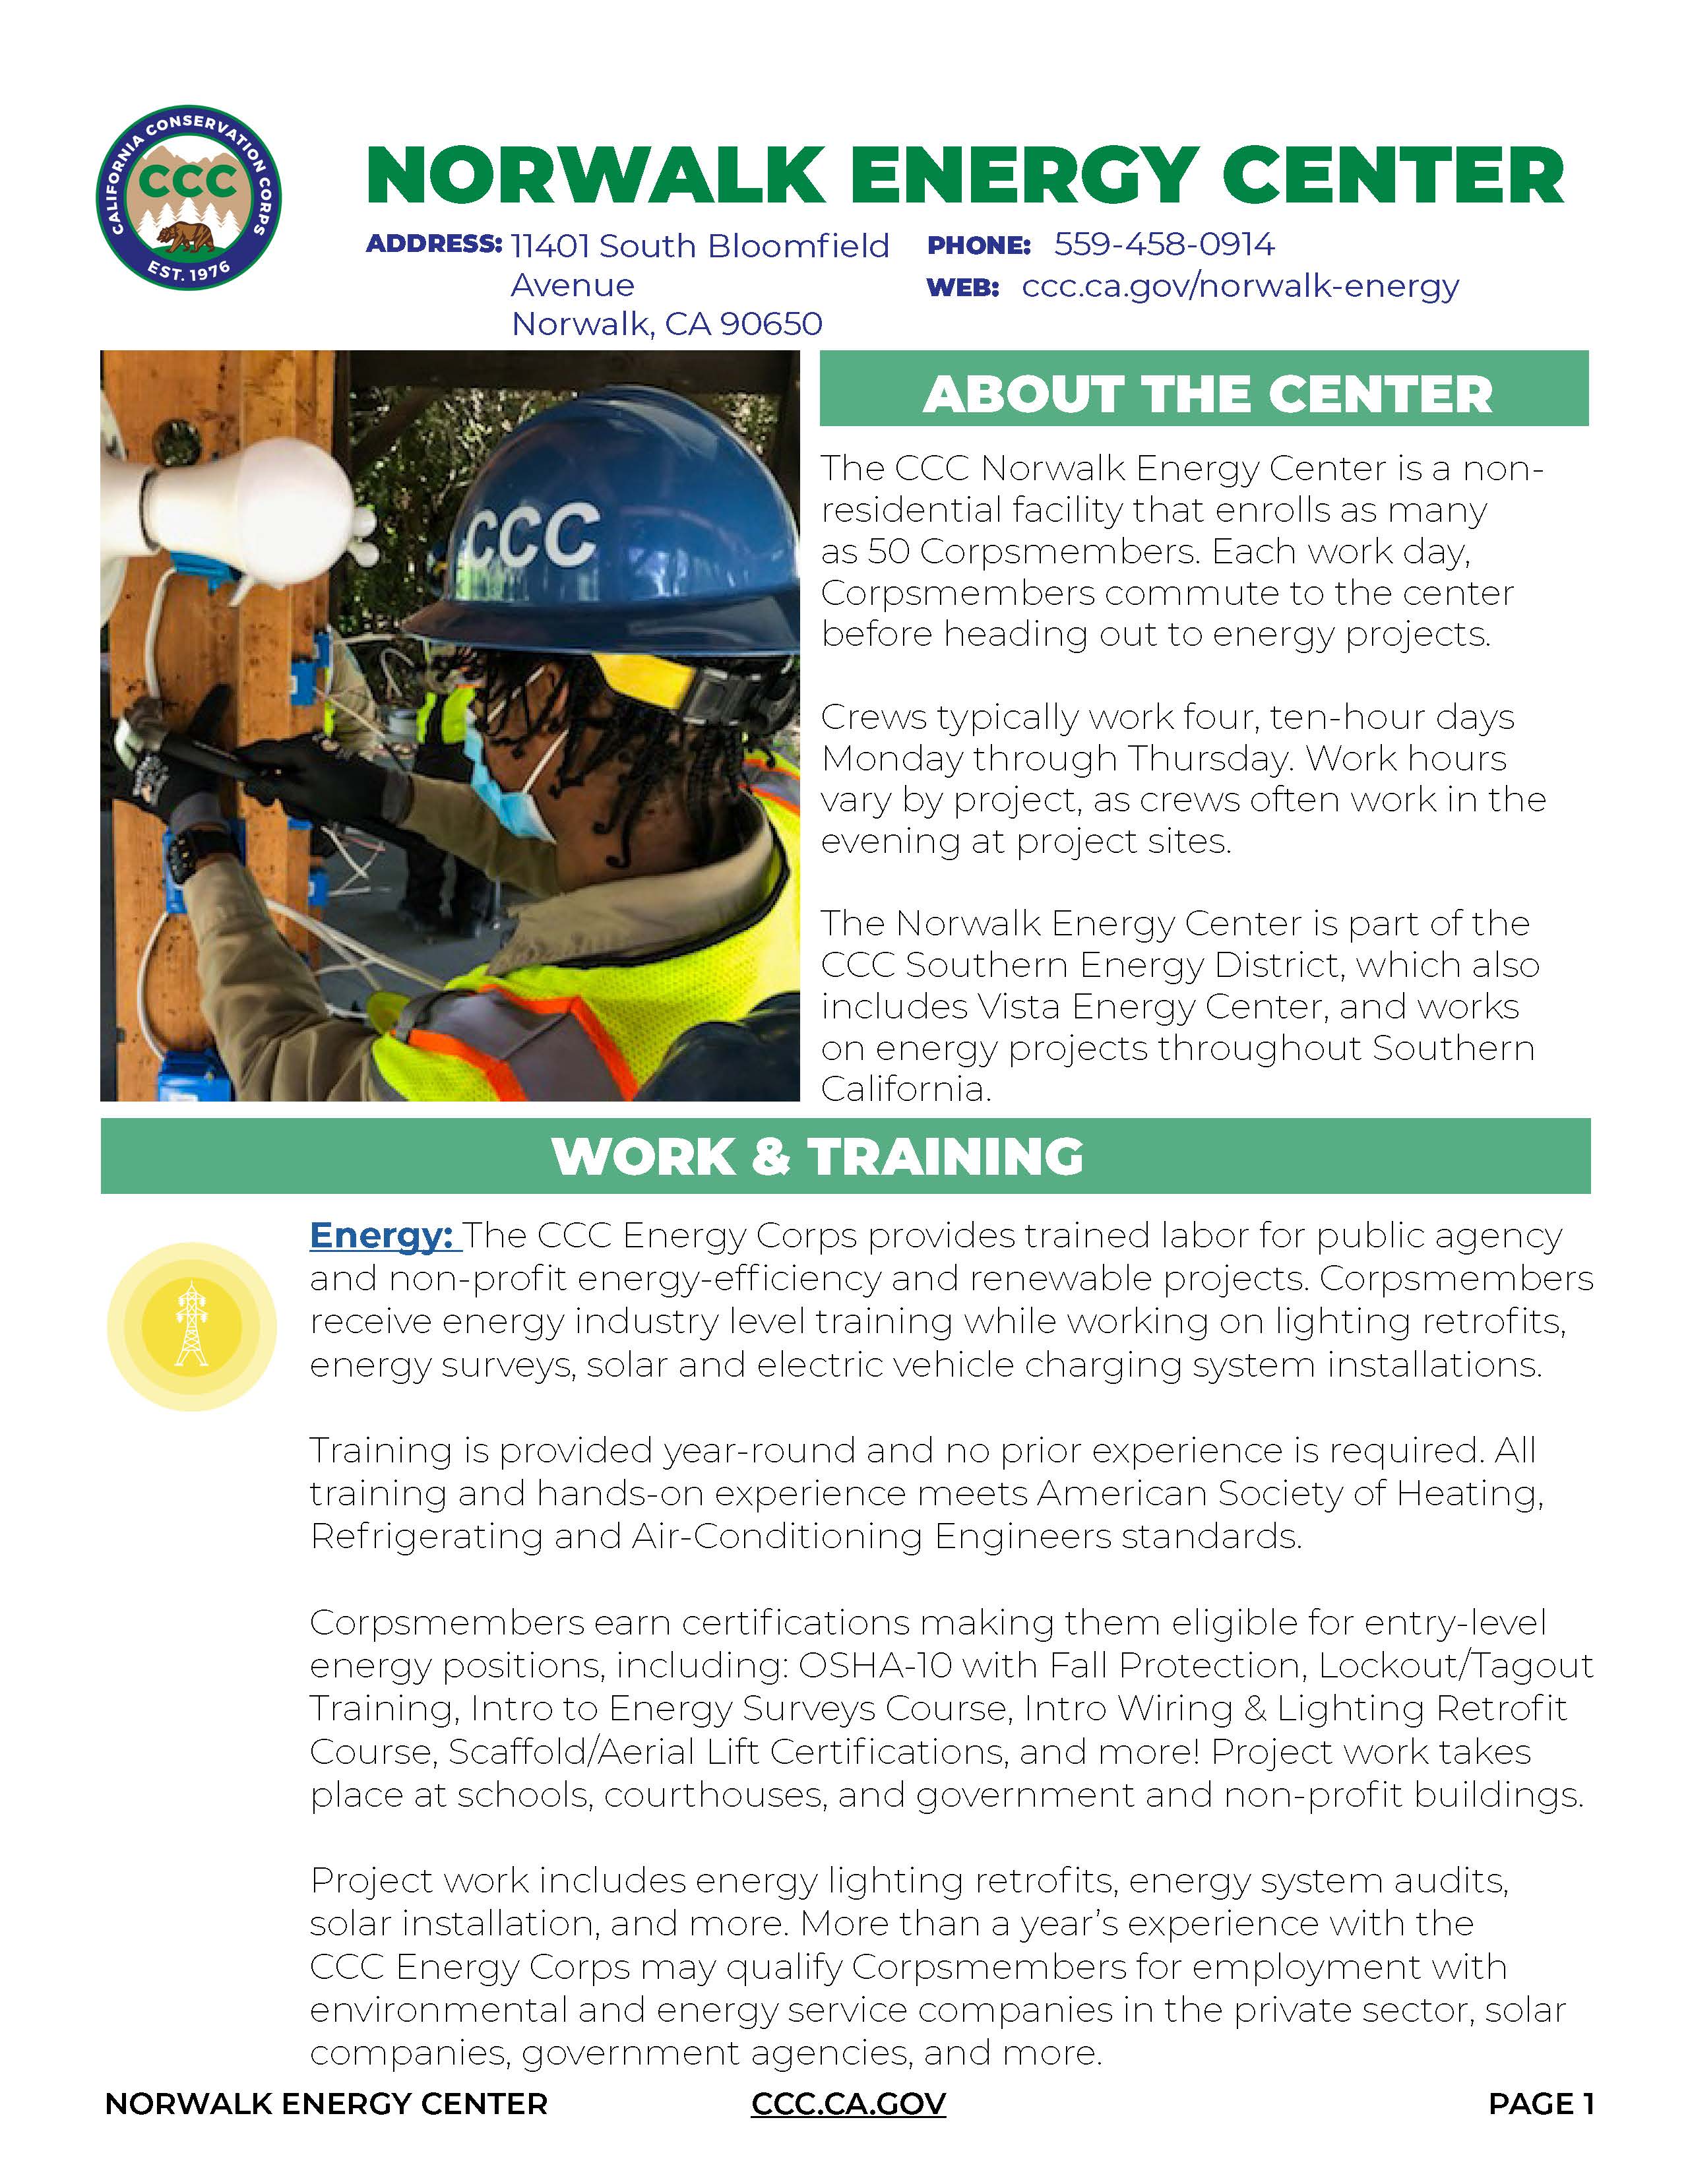 Image of Norwalk Energy Center Fact Sheet